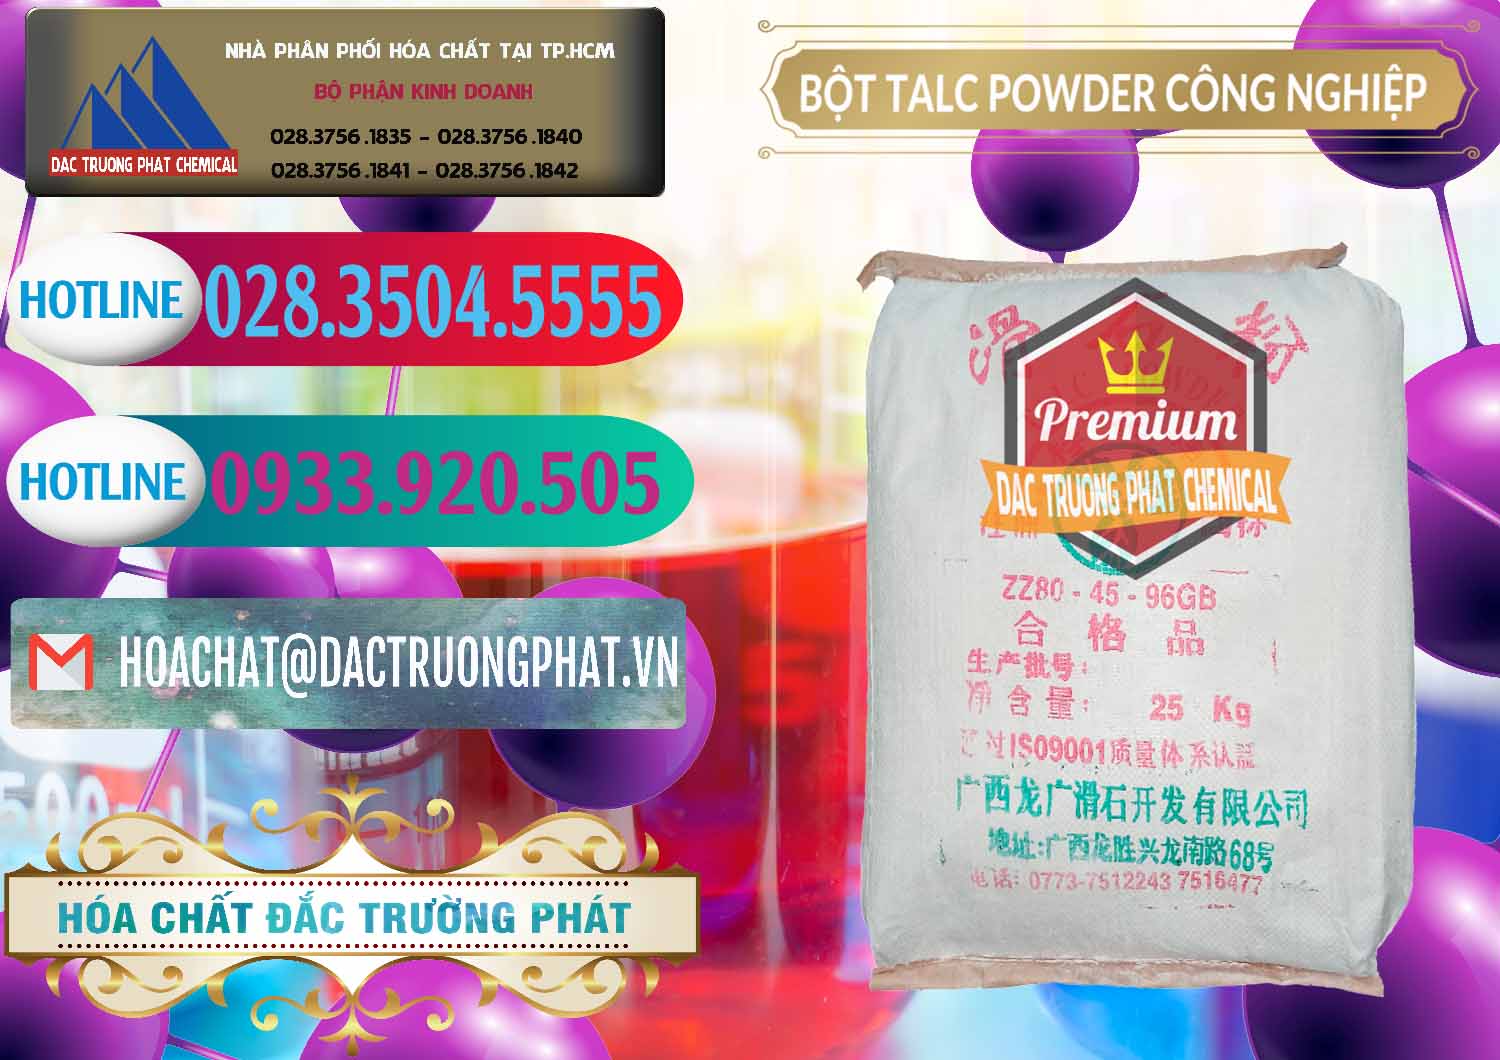 Công ty bán - cung ứng Bột Talc Powder Công Nghiệp Trung Quốc China - 0037 - Nơi chuyên phân phối ( kinh doanh ) hóa chất tại TP.HCM - truongphat.vn